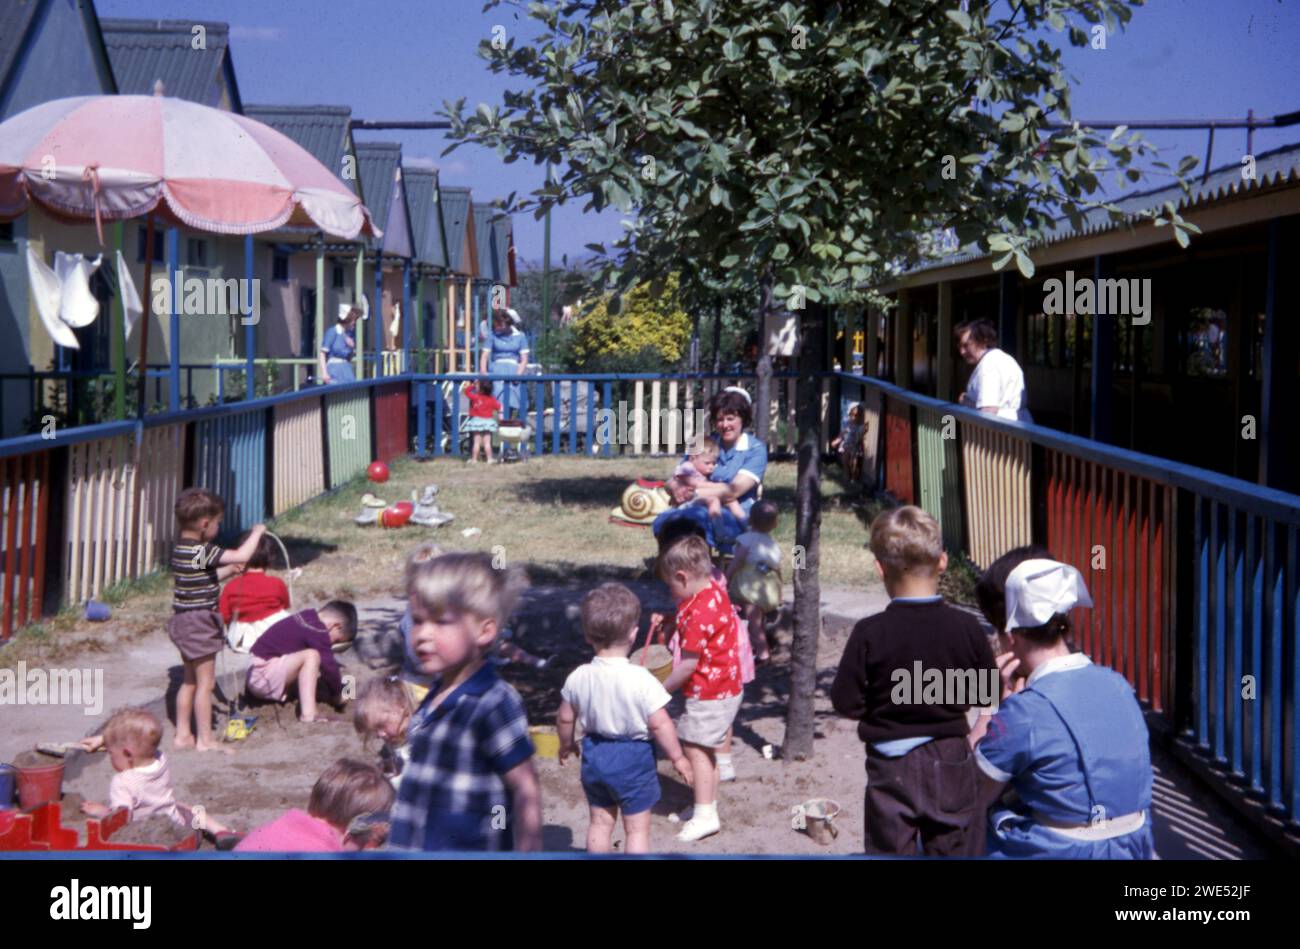 Abgezäunter Kinderspielbereich mit Pflegepersonal in Uniform in Butlins, Bognor Regis, Juni 1963 Bild vom Henshaw Archiv Stockfoto